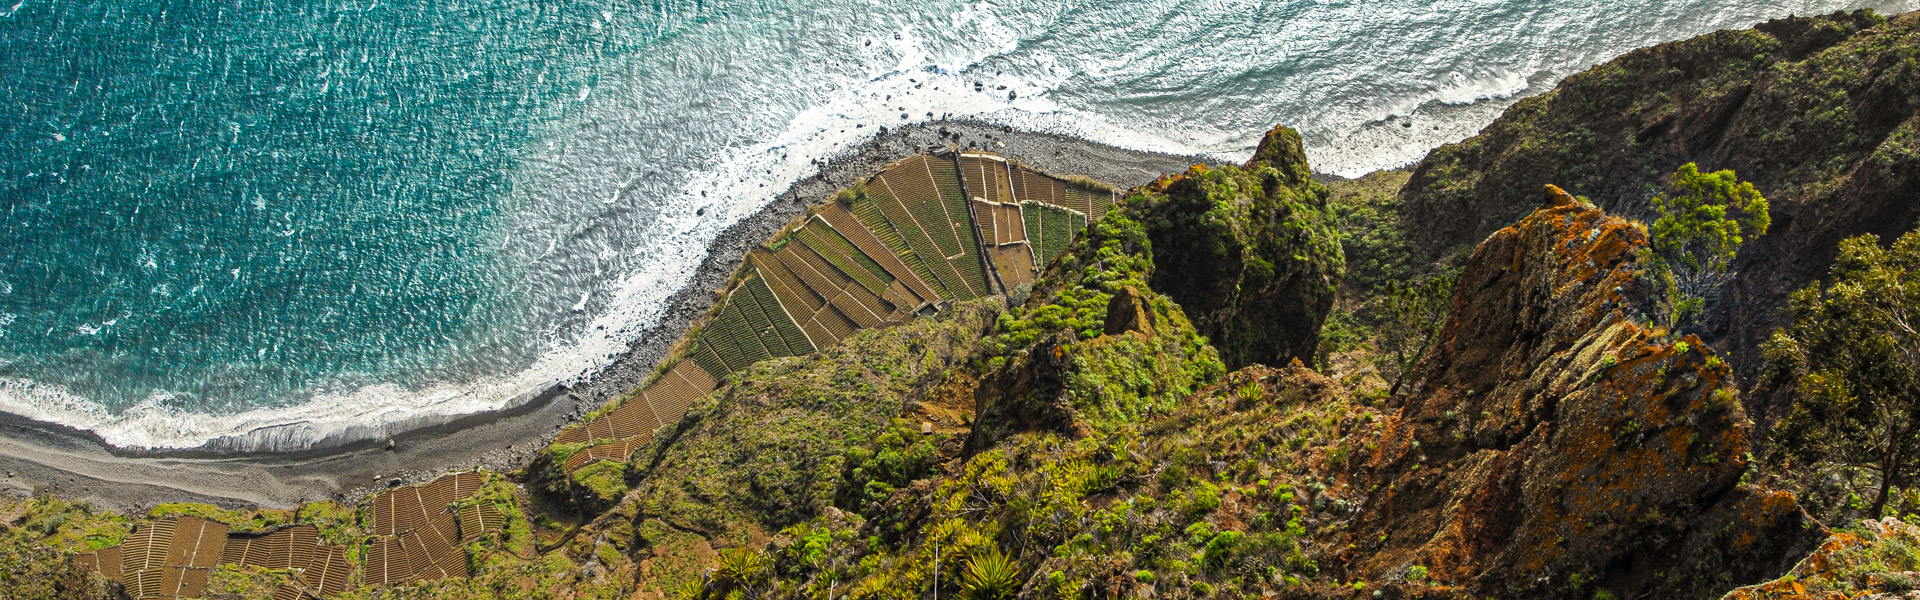 Cabo Girao, Madeira, Portugal